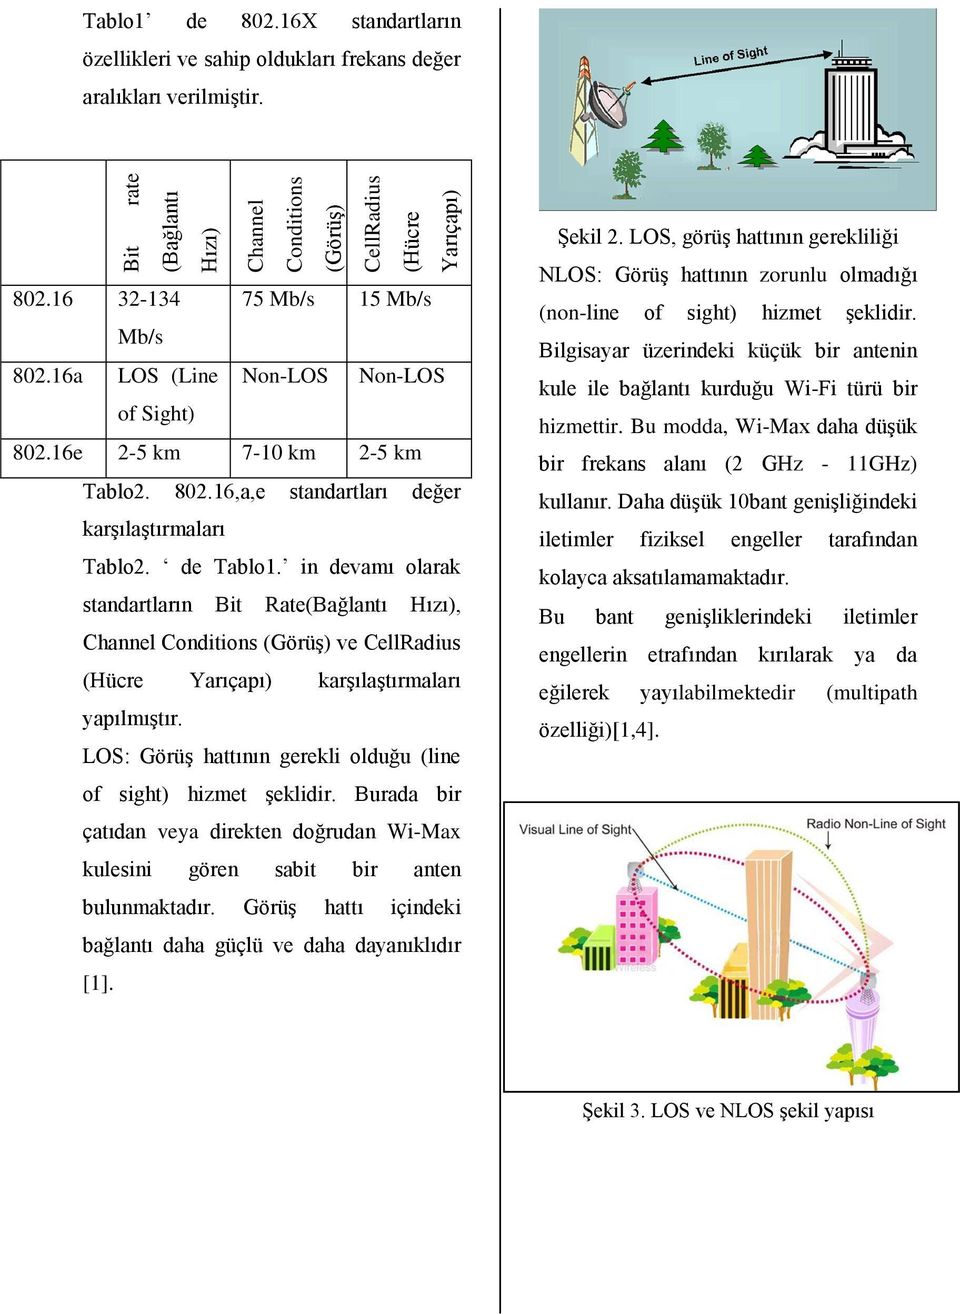 in devamı olarak standartların Bit Rate(Bağlantı Hızı), Channel Conditions (Görüş) ve CellRadius (Hücre Yarıçapı) karşılaştırmaları yapılmıştır.